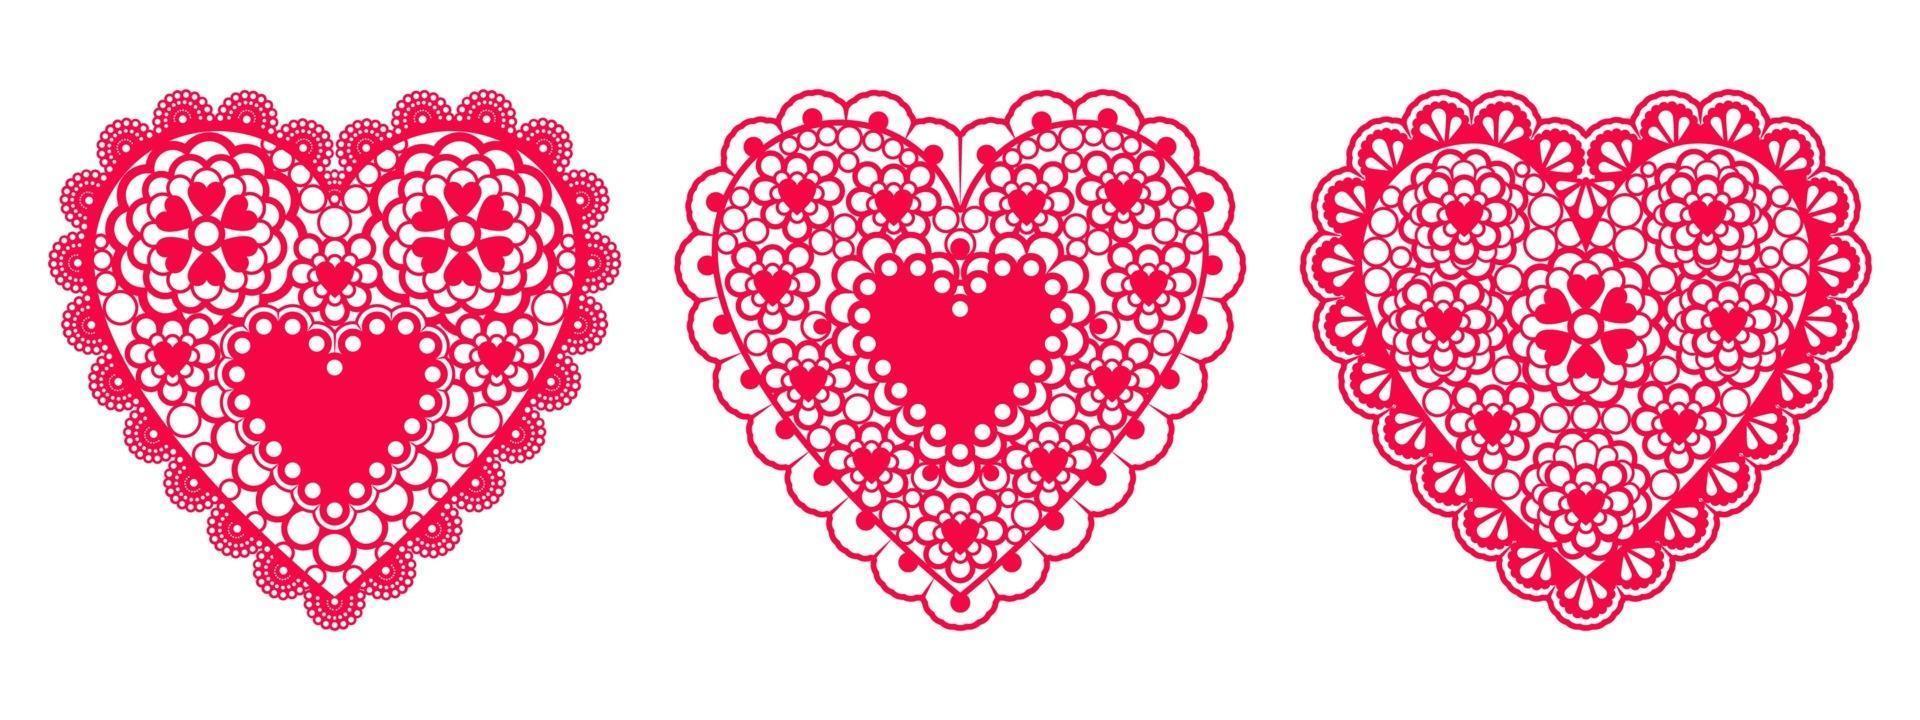 conjunto de corazones de encaje de papel para boda de elemento de diseño o tarjetas de San Valentín, invitaciones, etc. diseño plano vectorial. vector